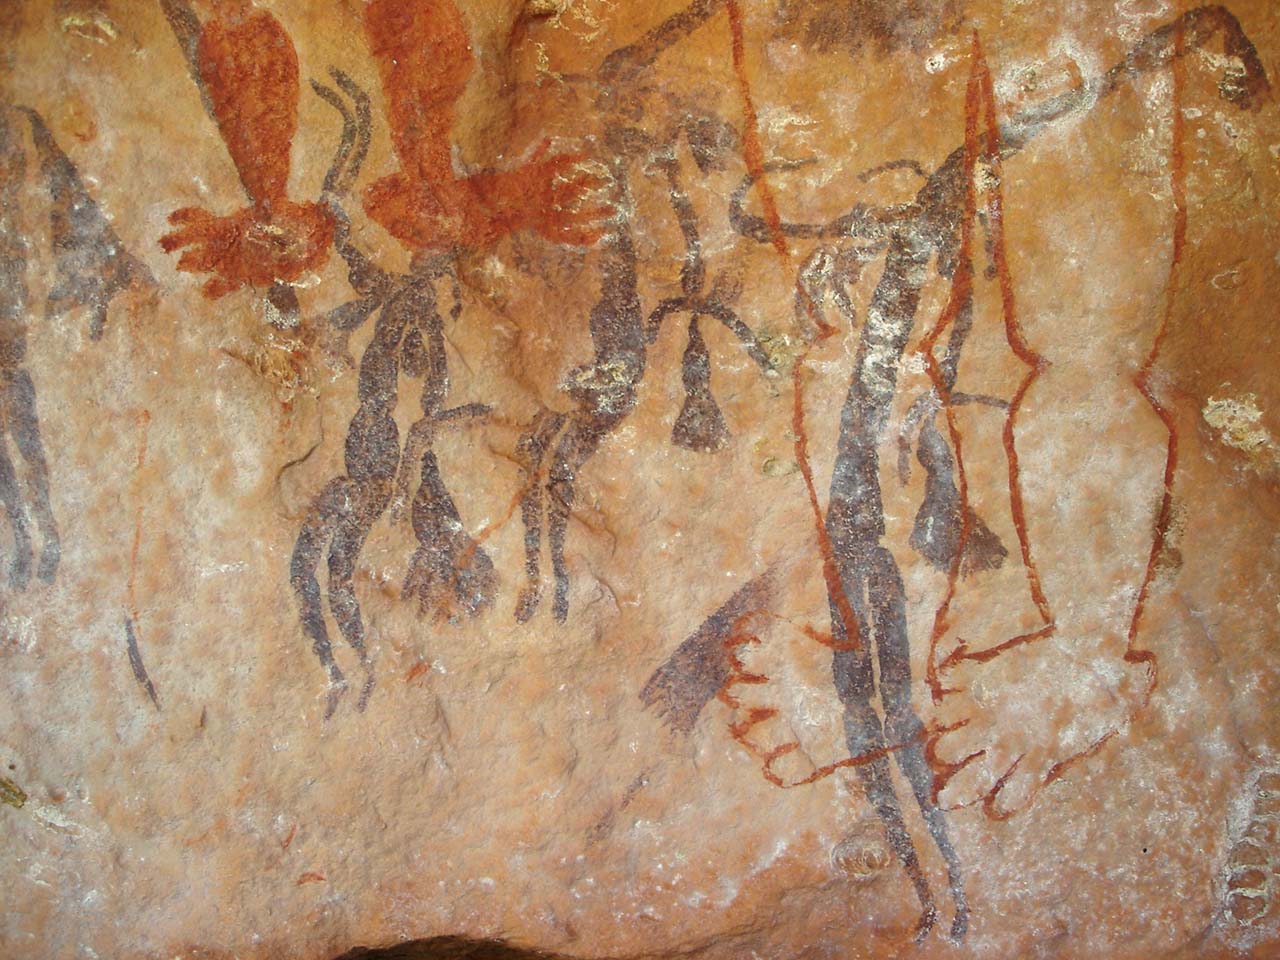 Tradita aborigjene e piktures ne shpella qe verteton lashtesine e ketij populli